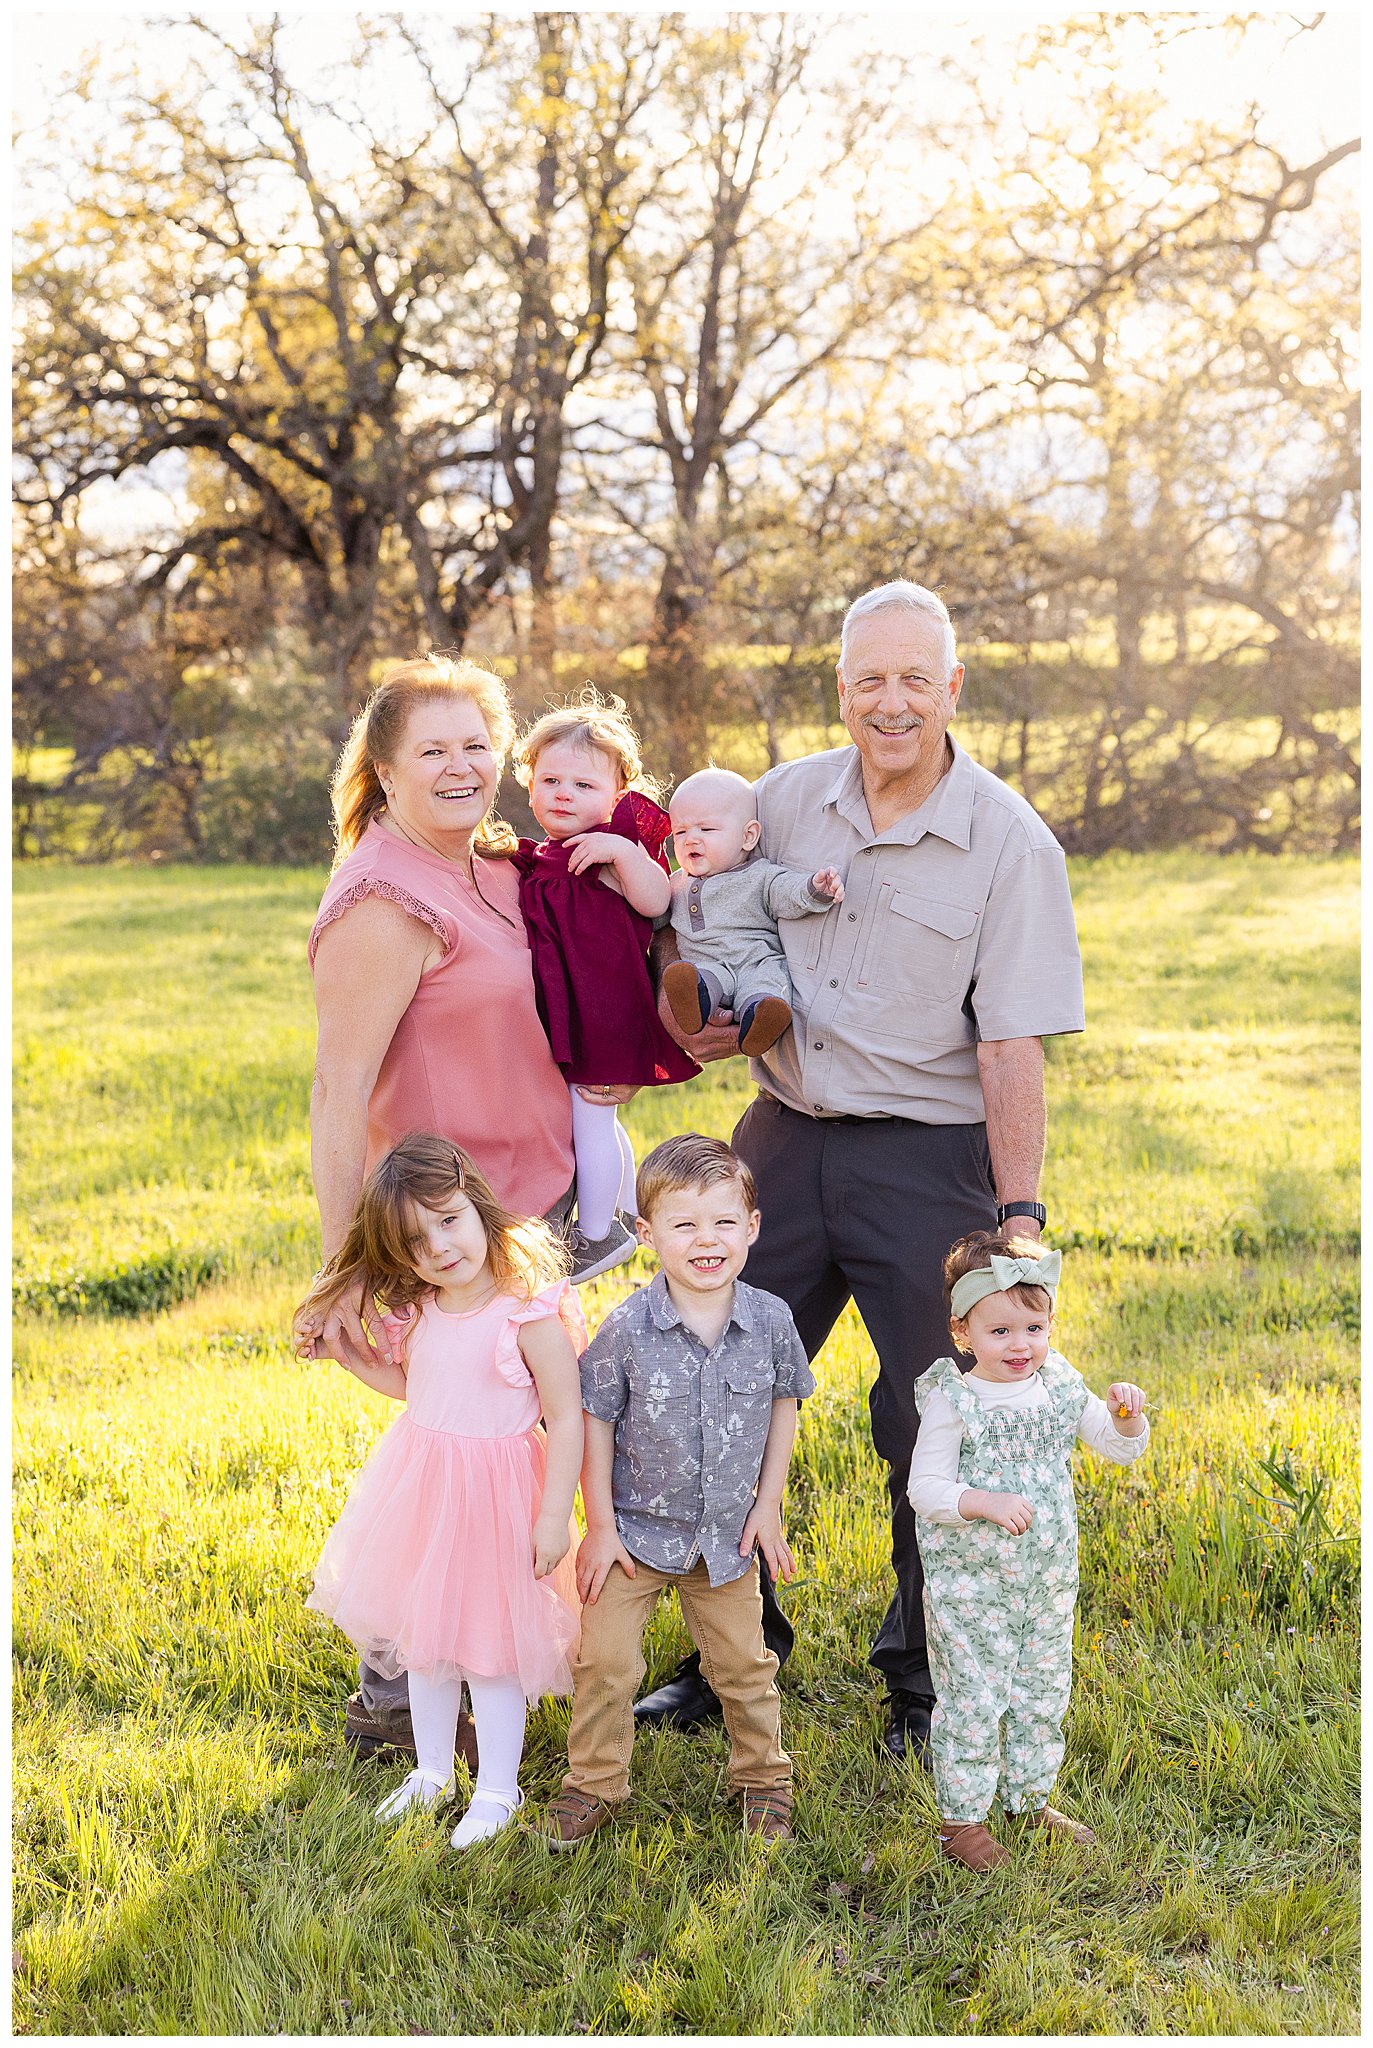 Grandparents with Grandchildren in Grass Field | Valerie + Roy